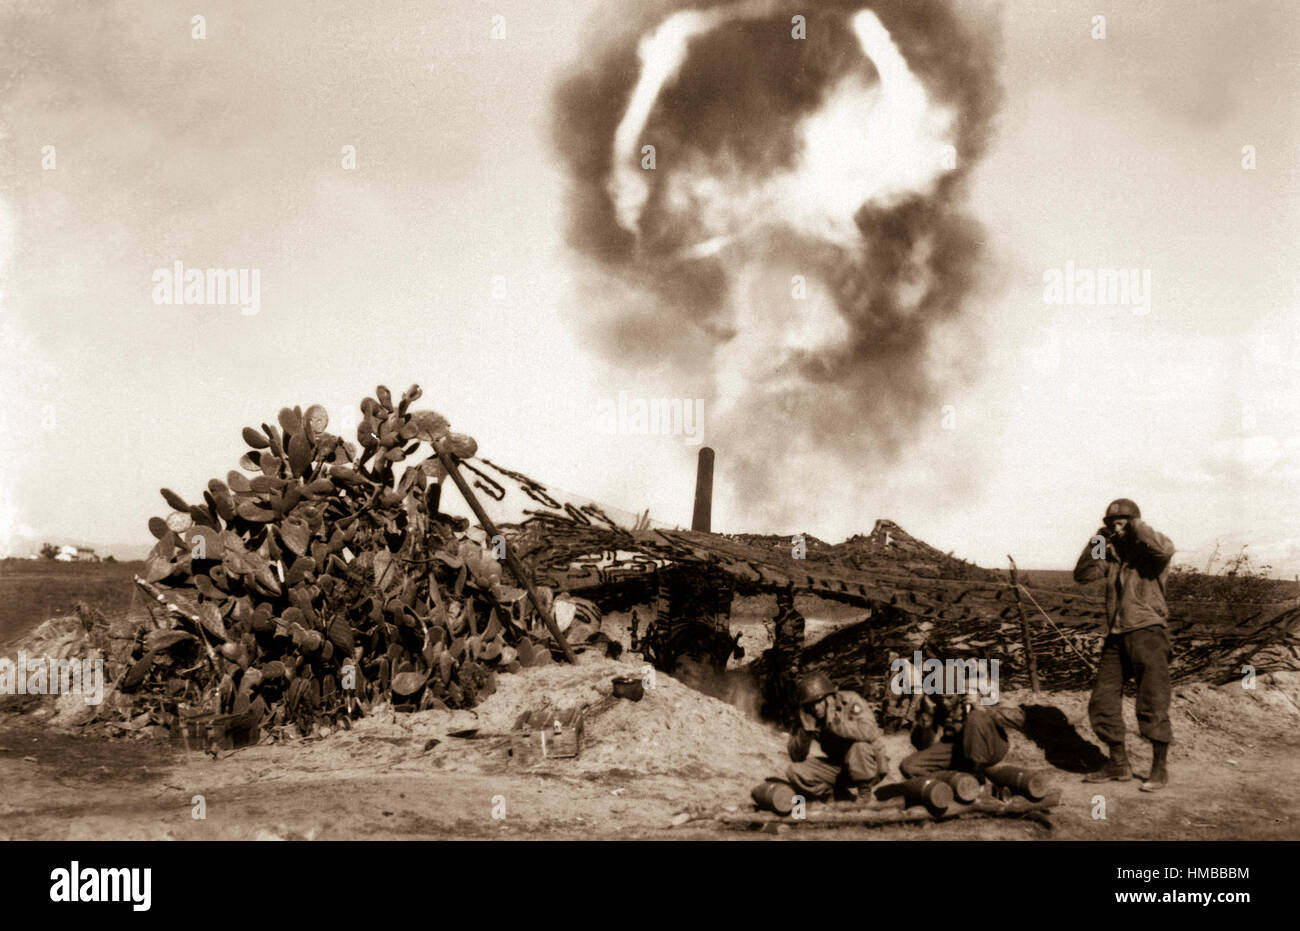 Tom lungo parla. Un 155mm gun ("Long Tom') viene incendiata dalle truppe americane. Area di Nettuno, Italia. Febbraio 13, 1944. Bonnard. (Esercito) Nara il file #: 111-SC-187704 guerra & CONFLITTO PRENOTA #: 1029 Foto Stock